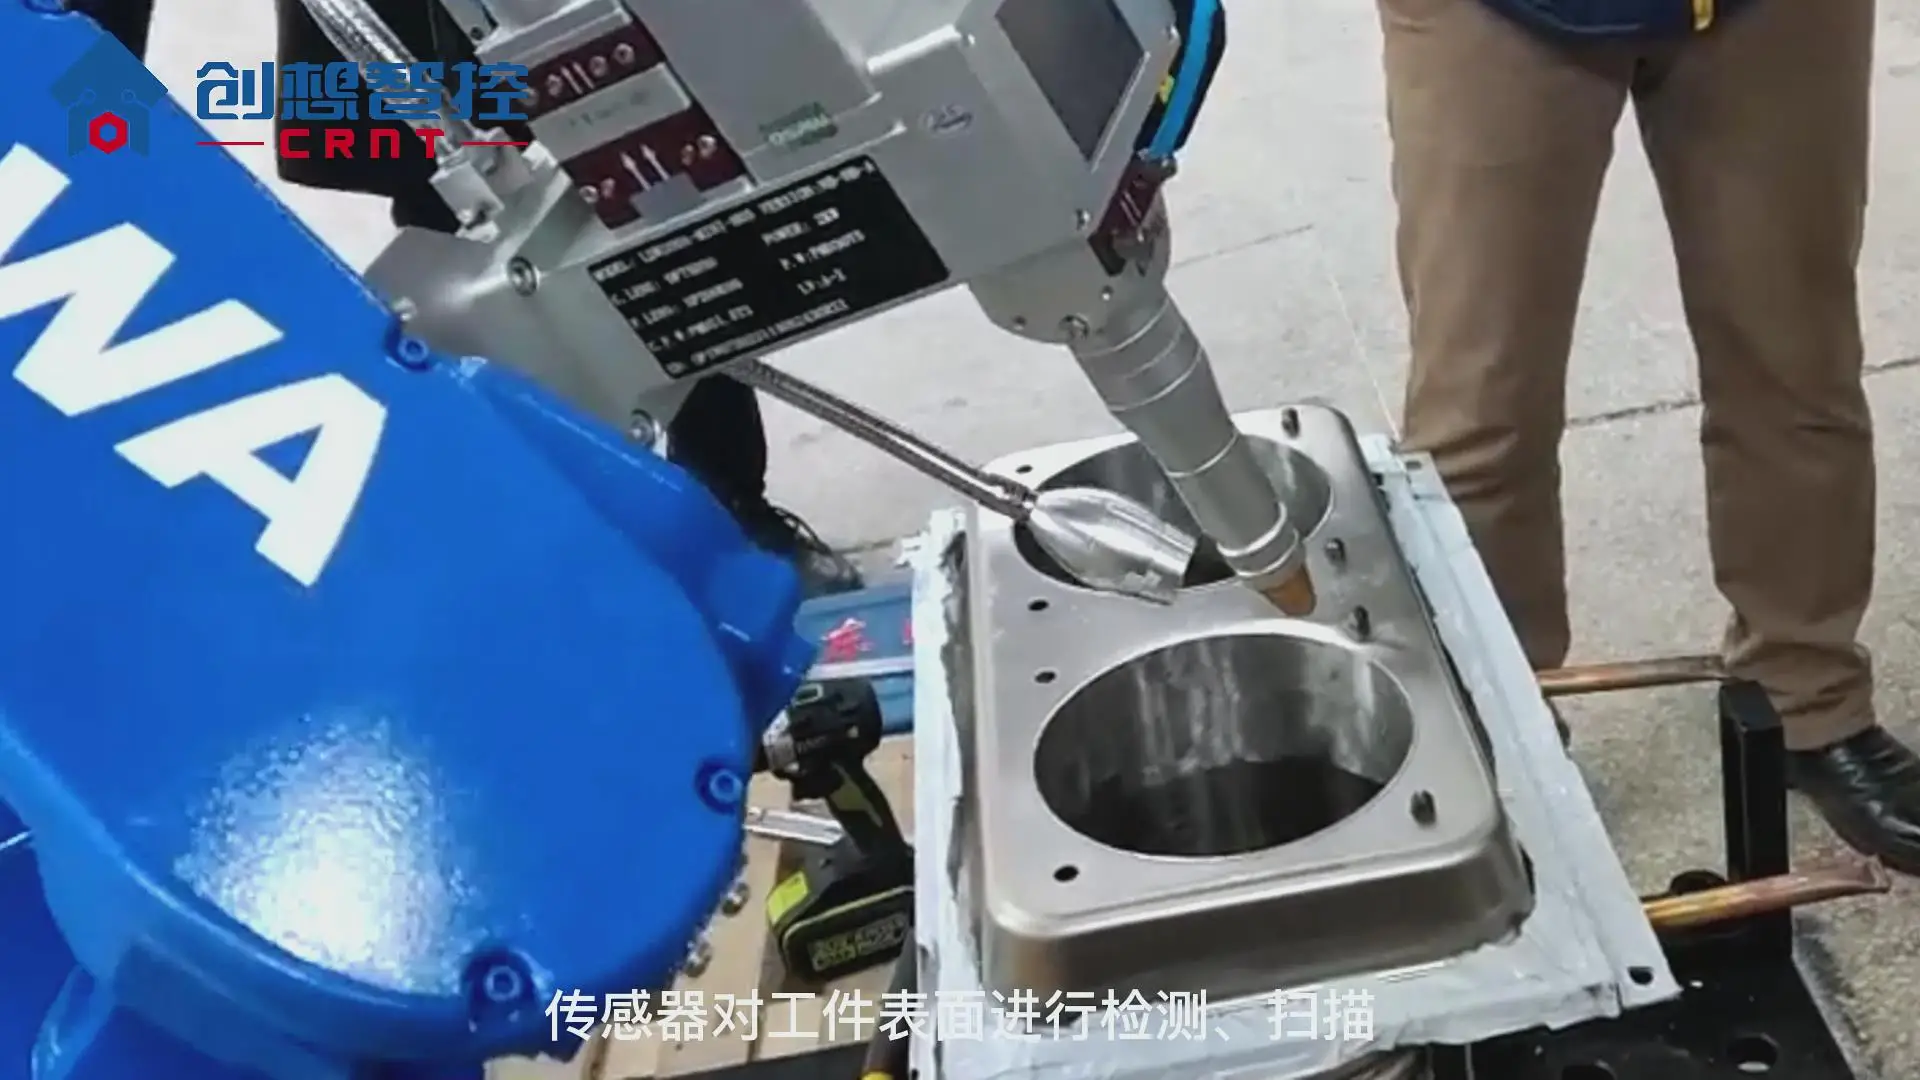 coinmarketcapcoinmarketcap是什么平台系统适配安川机器人在油箱自动焊接的应用案例